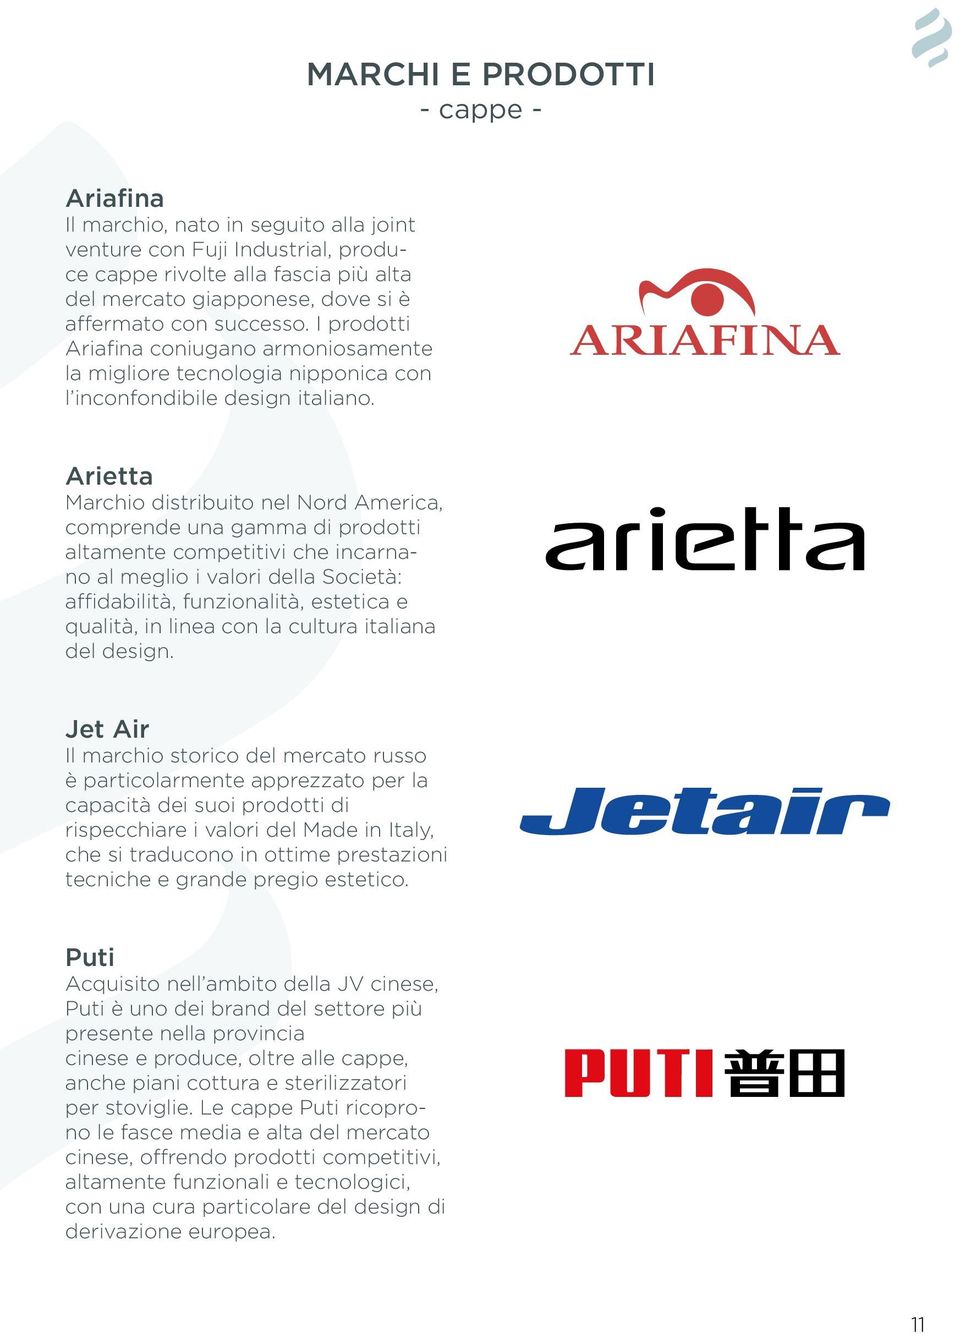 Arietta Marchio distribuito nel Nord America, comprende una gamma di prodotti altamente competitivi che incarnano al meglio i valori della Società: affidabilità, funzionalità, estetica e qualità, in